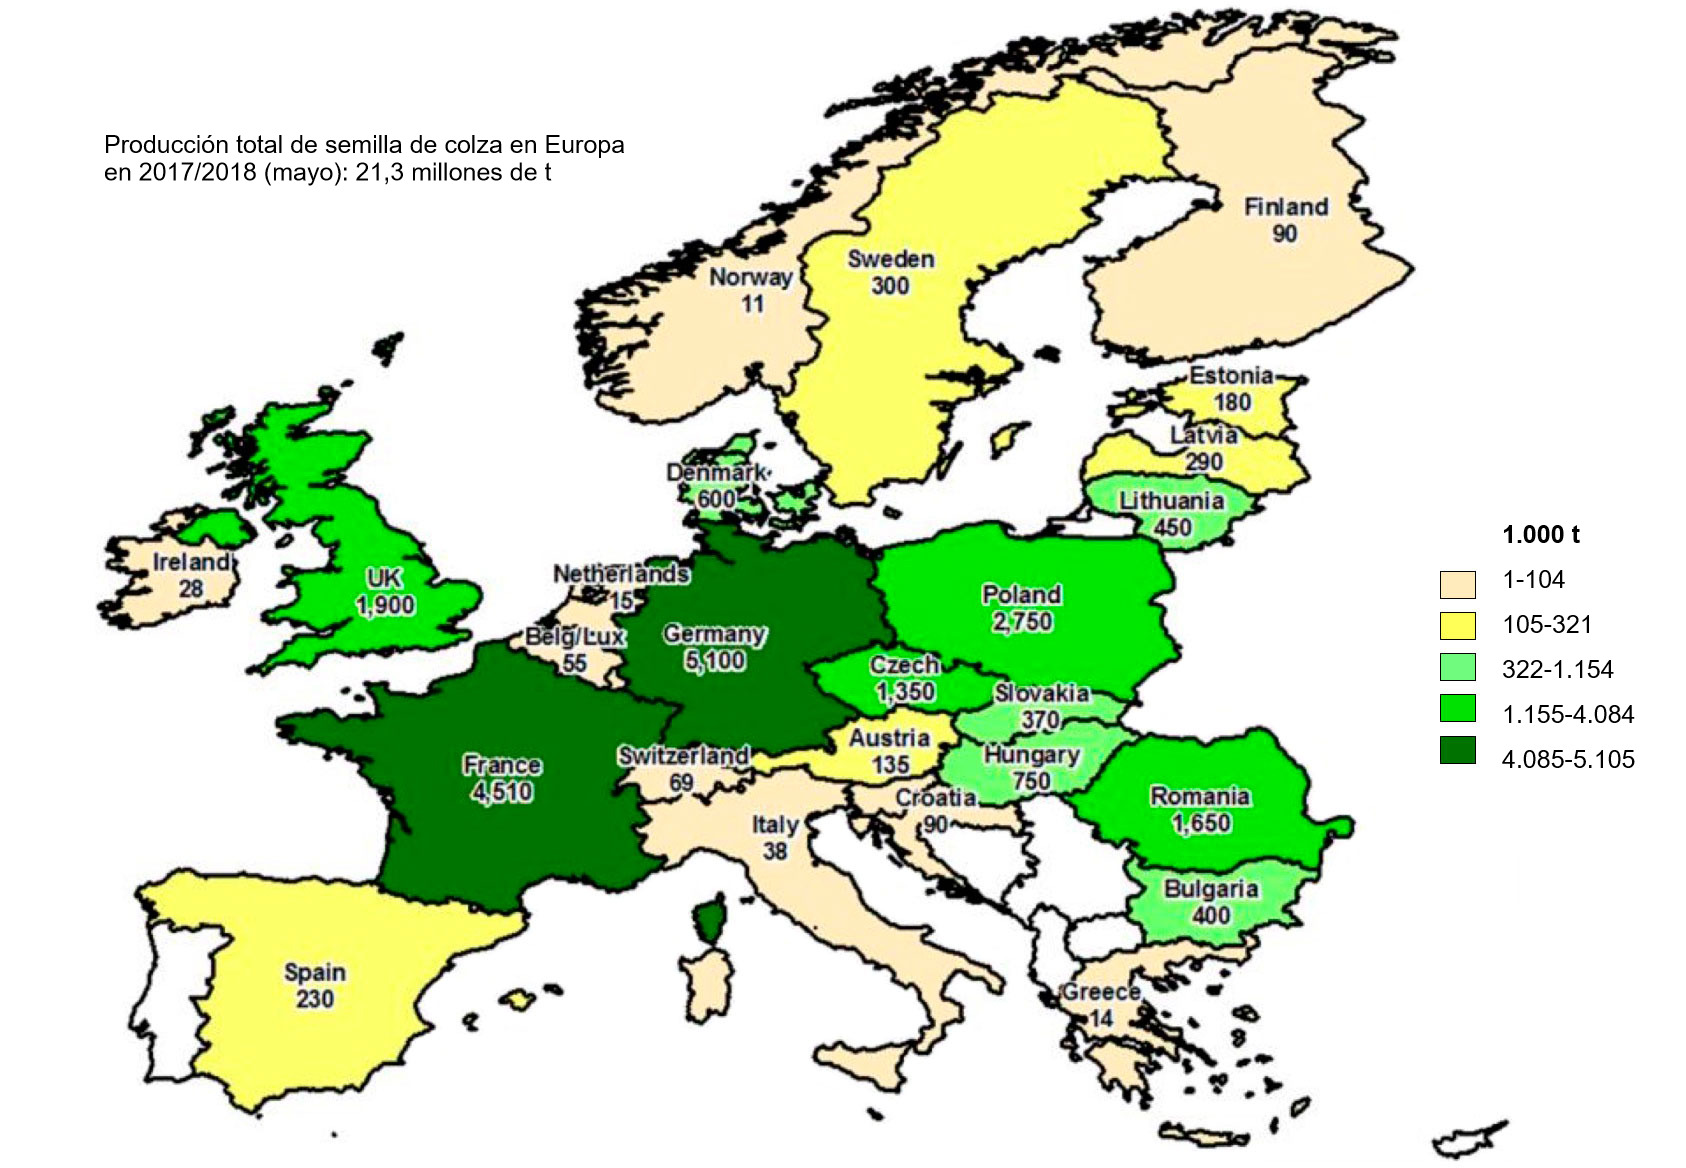 Producción estimada de semilla de colza en Europa